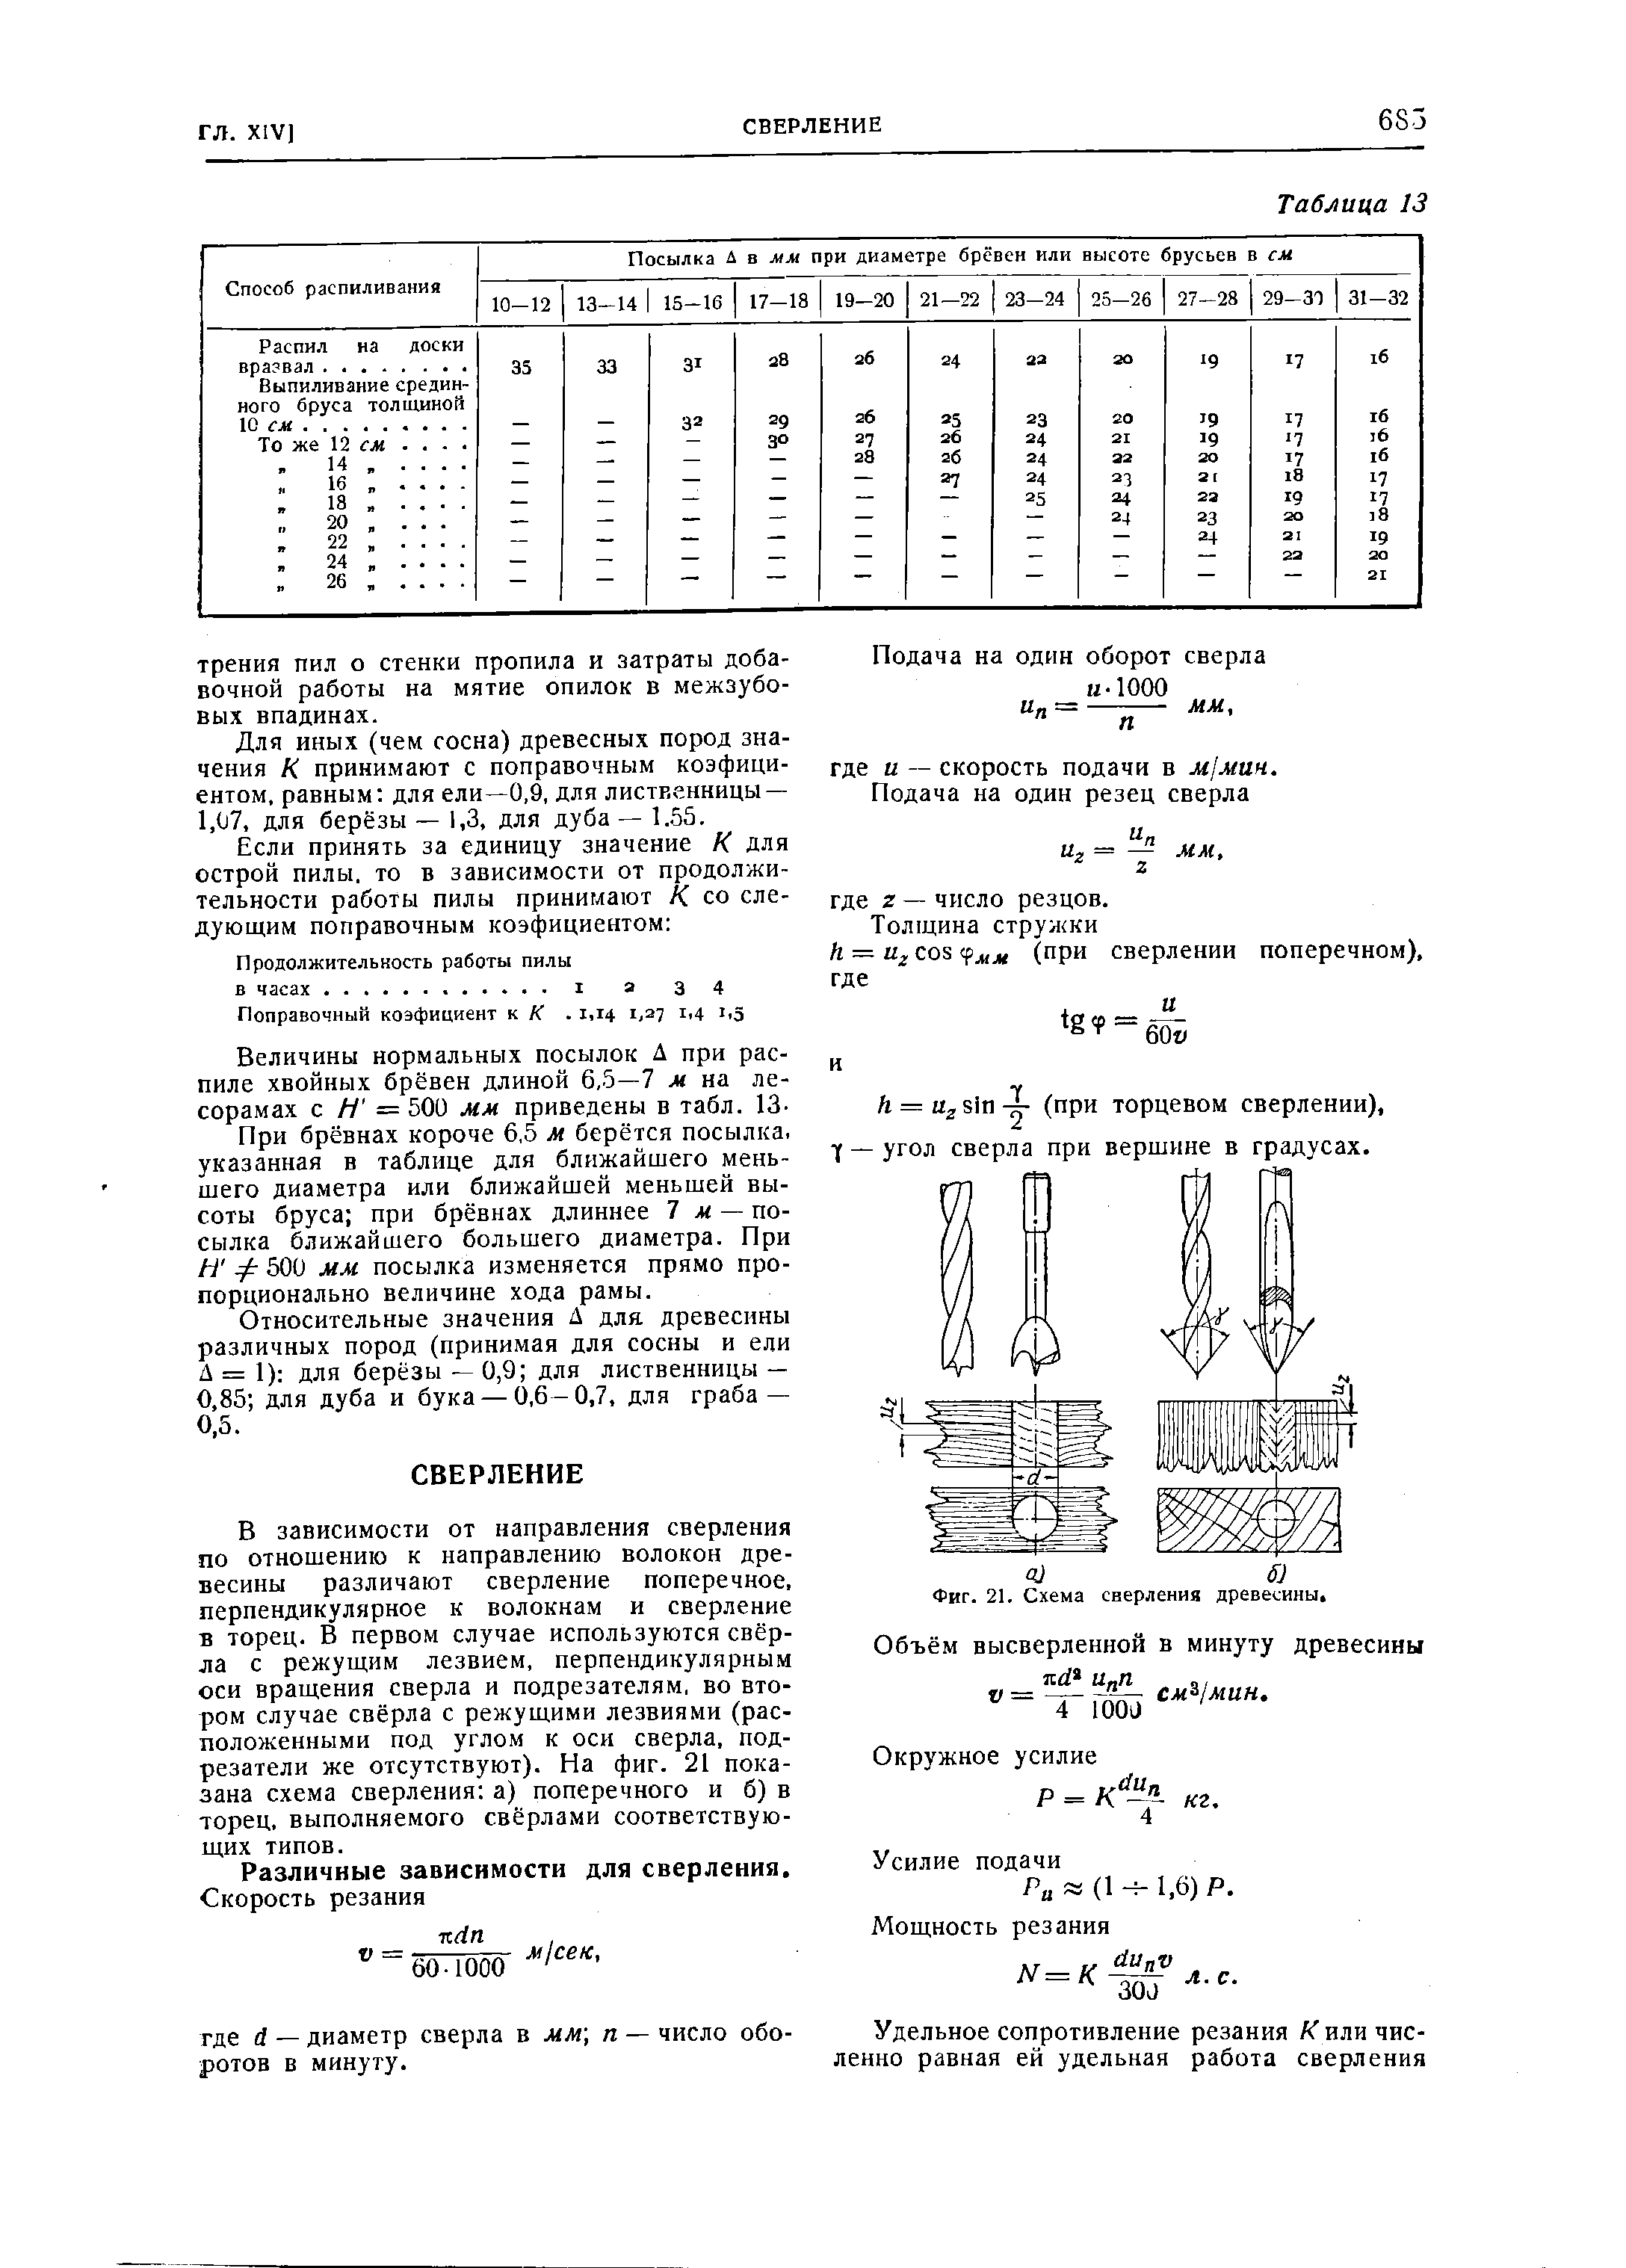 Фиг. 21. Схема сверления древесины 
